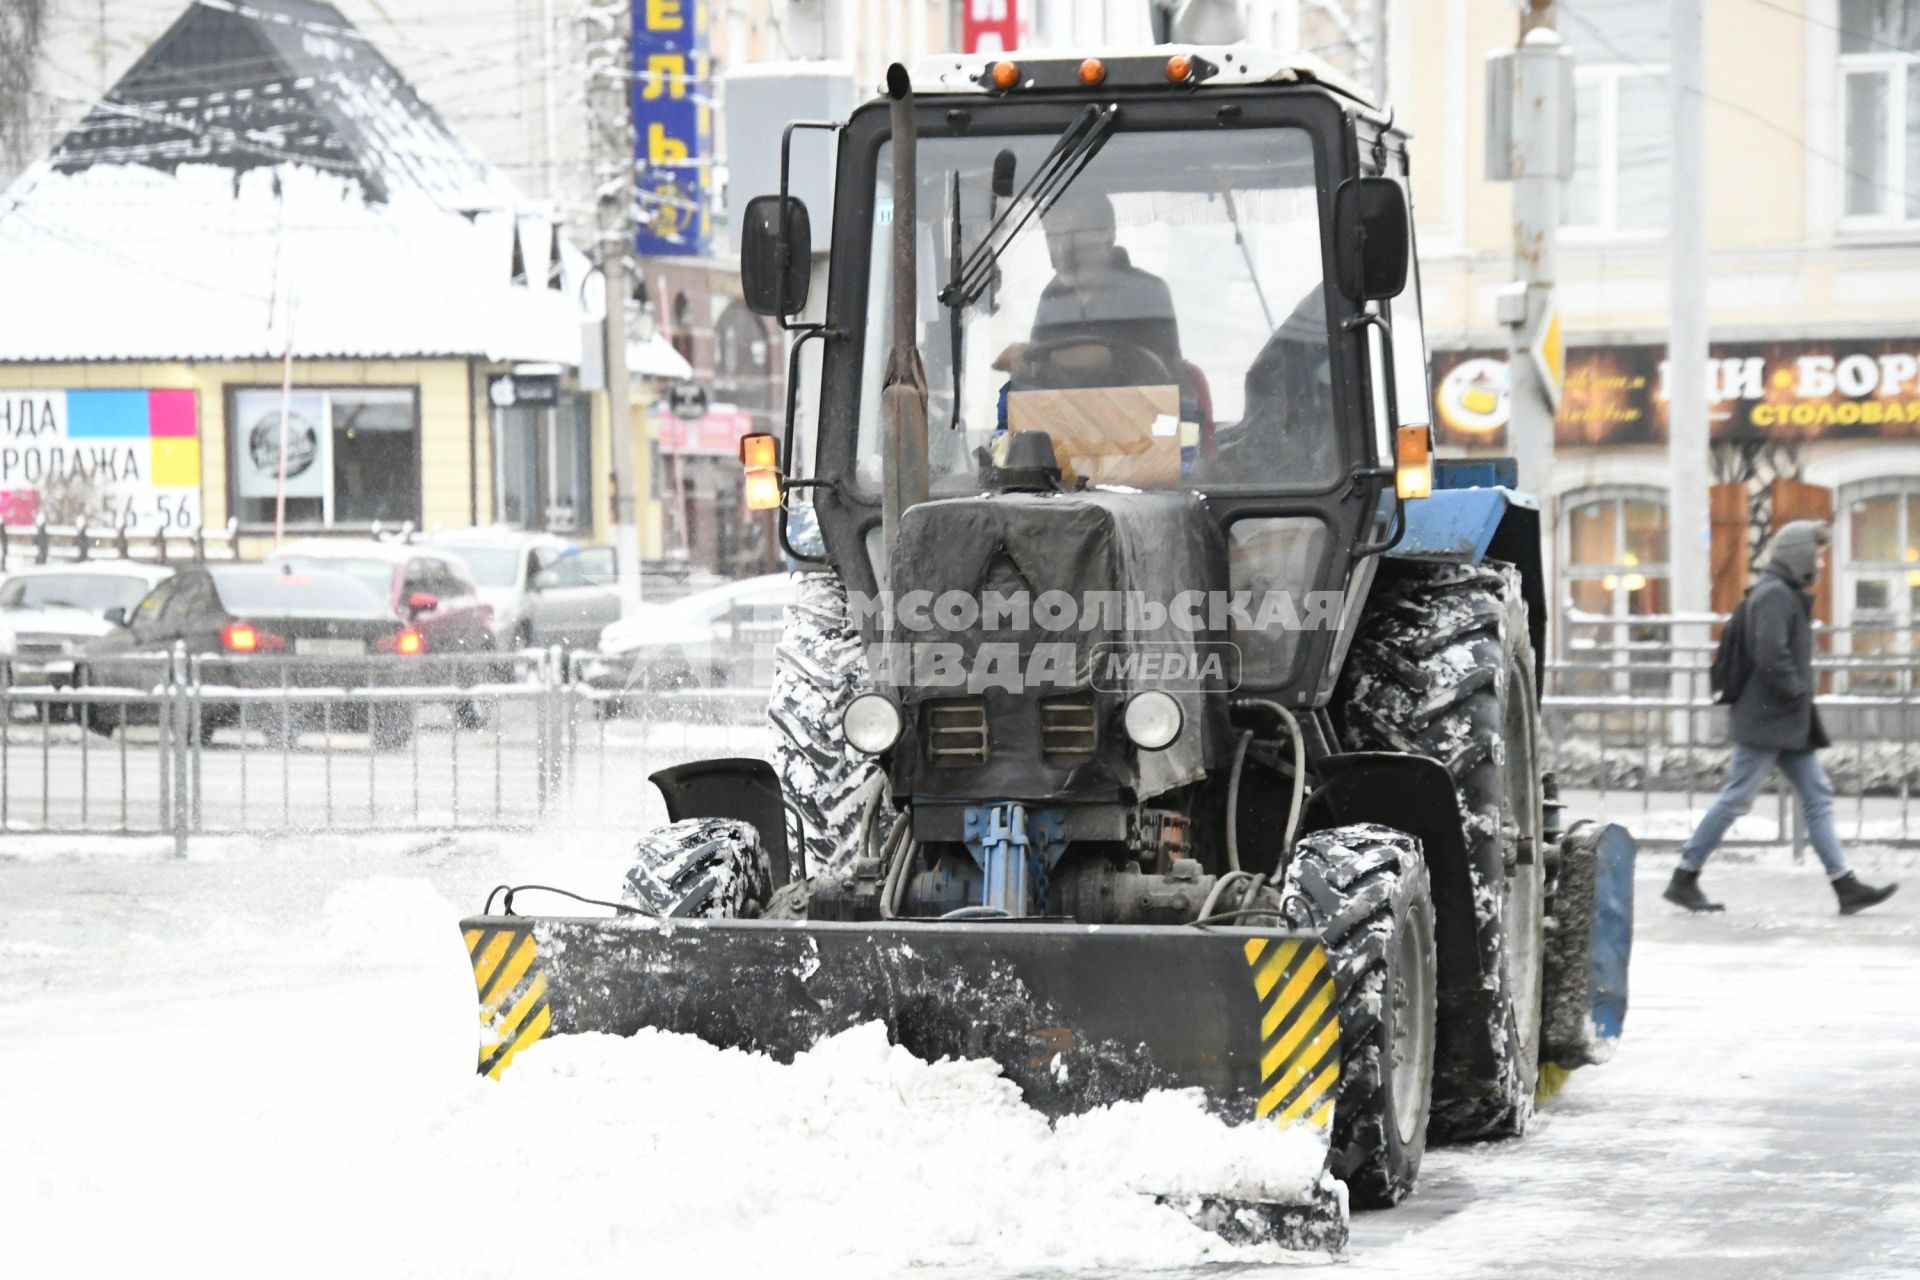 Тула. Снегоуборочная техника на одной из улиц города.